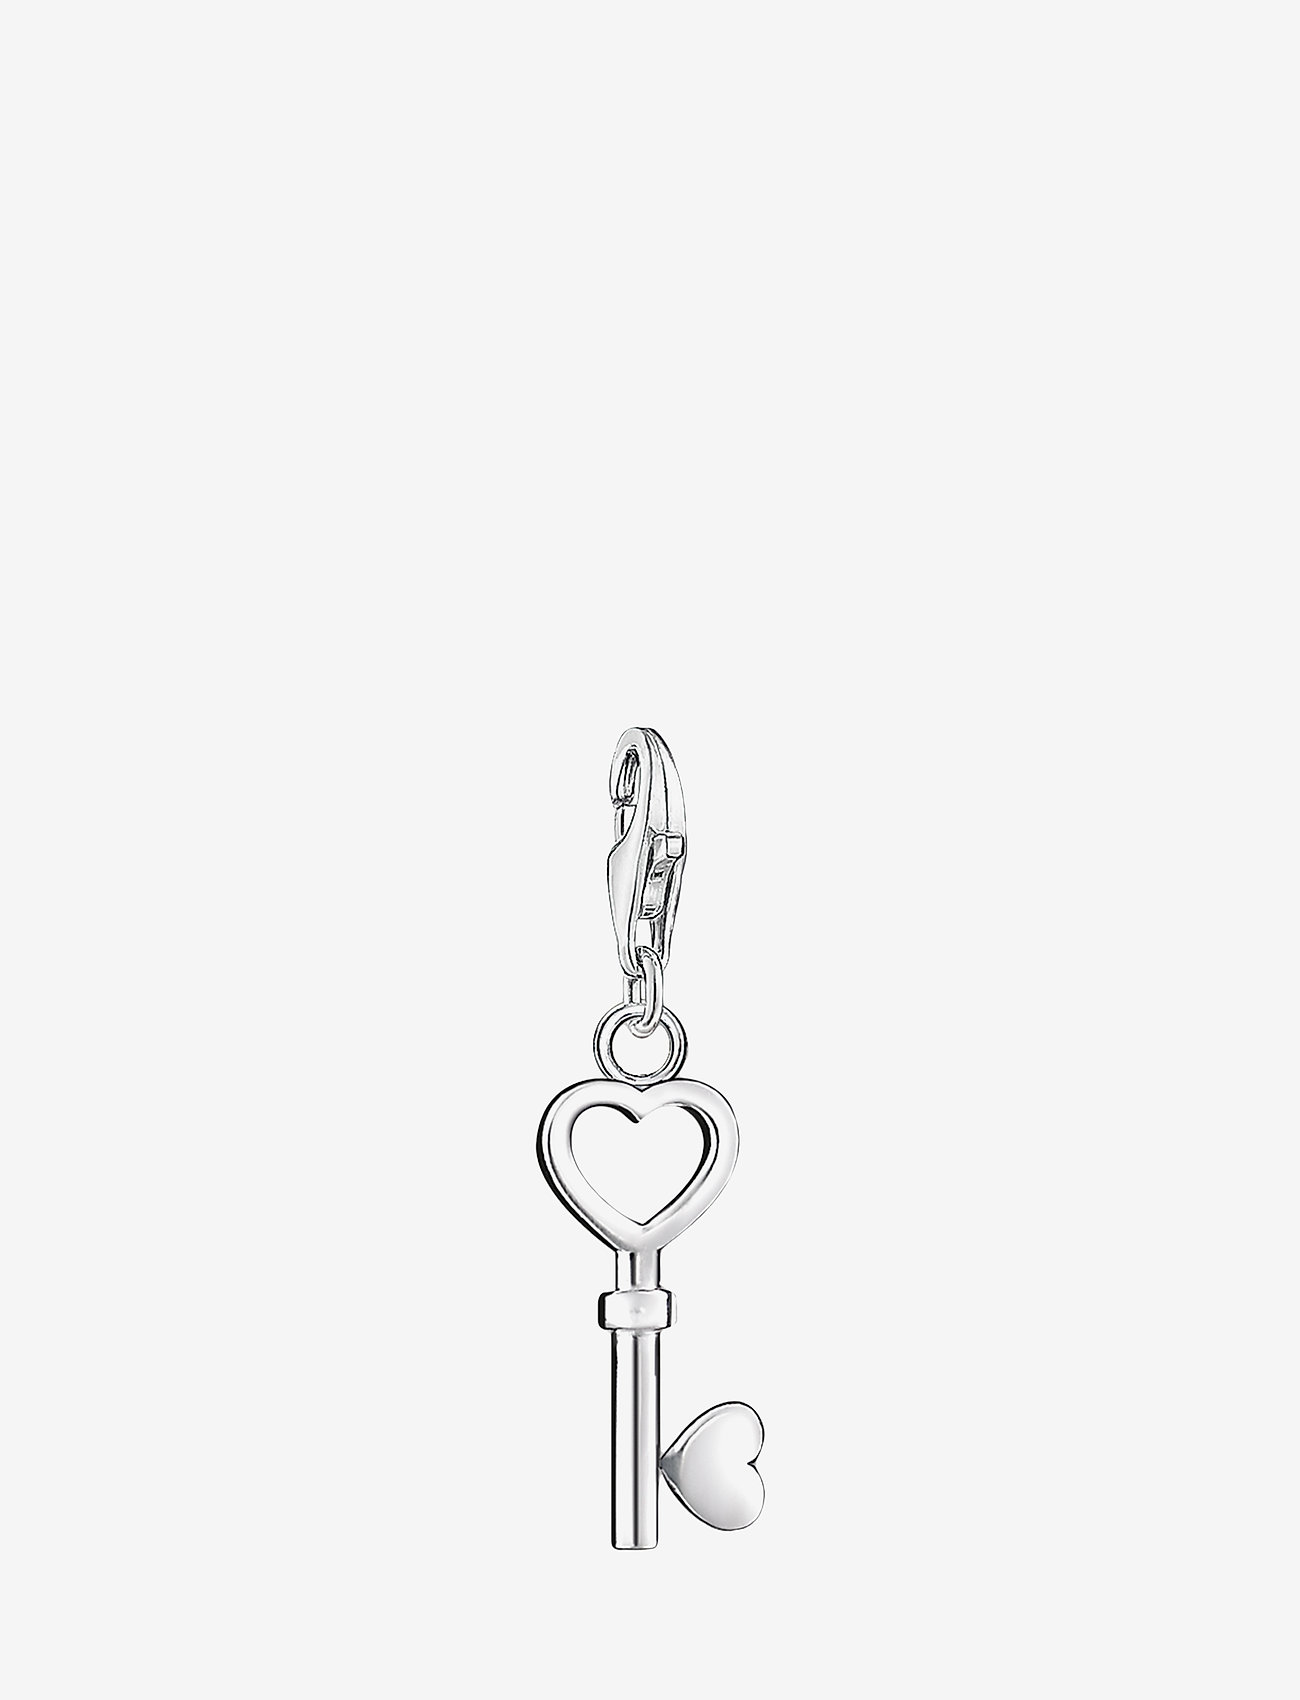 Thomas Sabo - Charm pendant "key" - festmode zu outlet-preisen - silver - 0